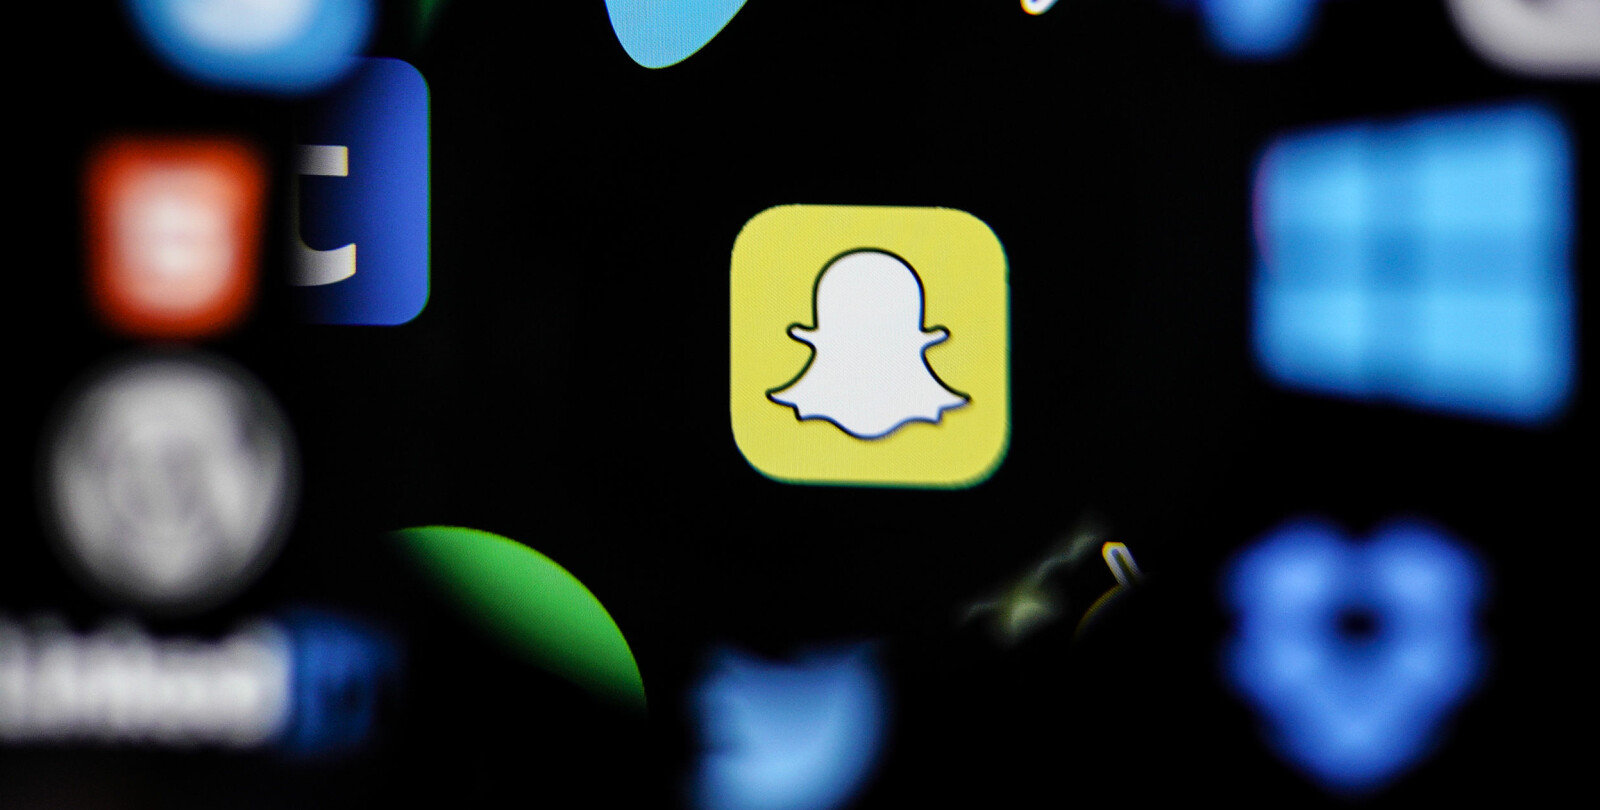 <b>POPULÆRT:</b> Snapchat brukes av "alle" under 30 år, men stadig flere voksne bruker Snapchat.